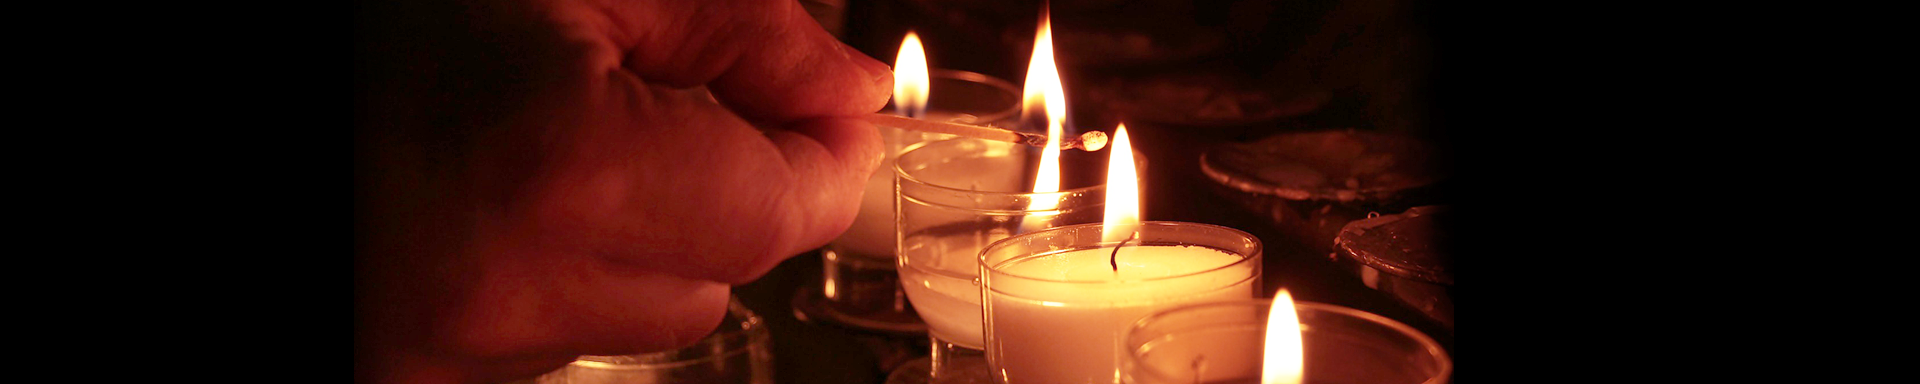 Image: Votive candles